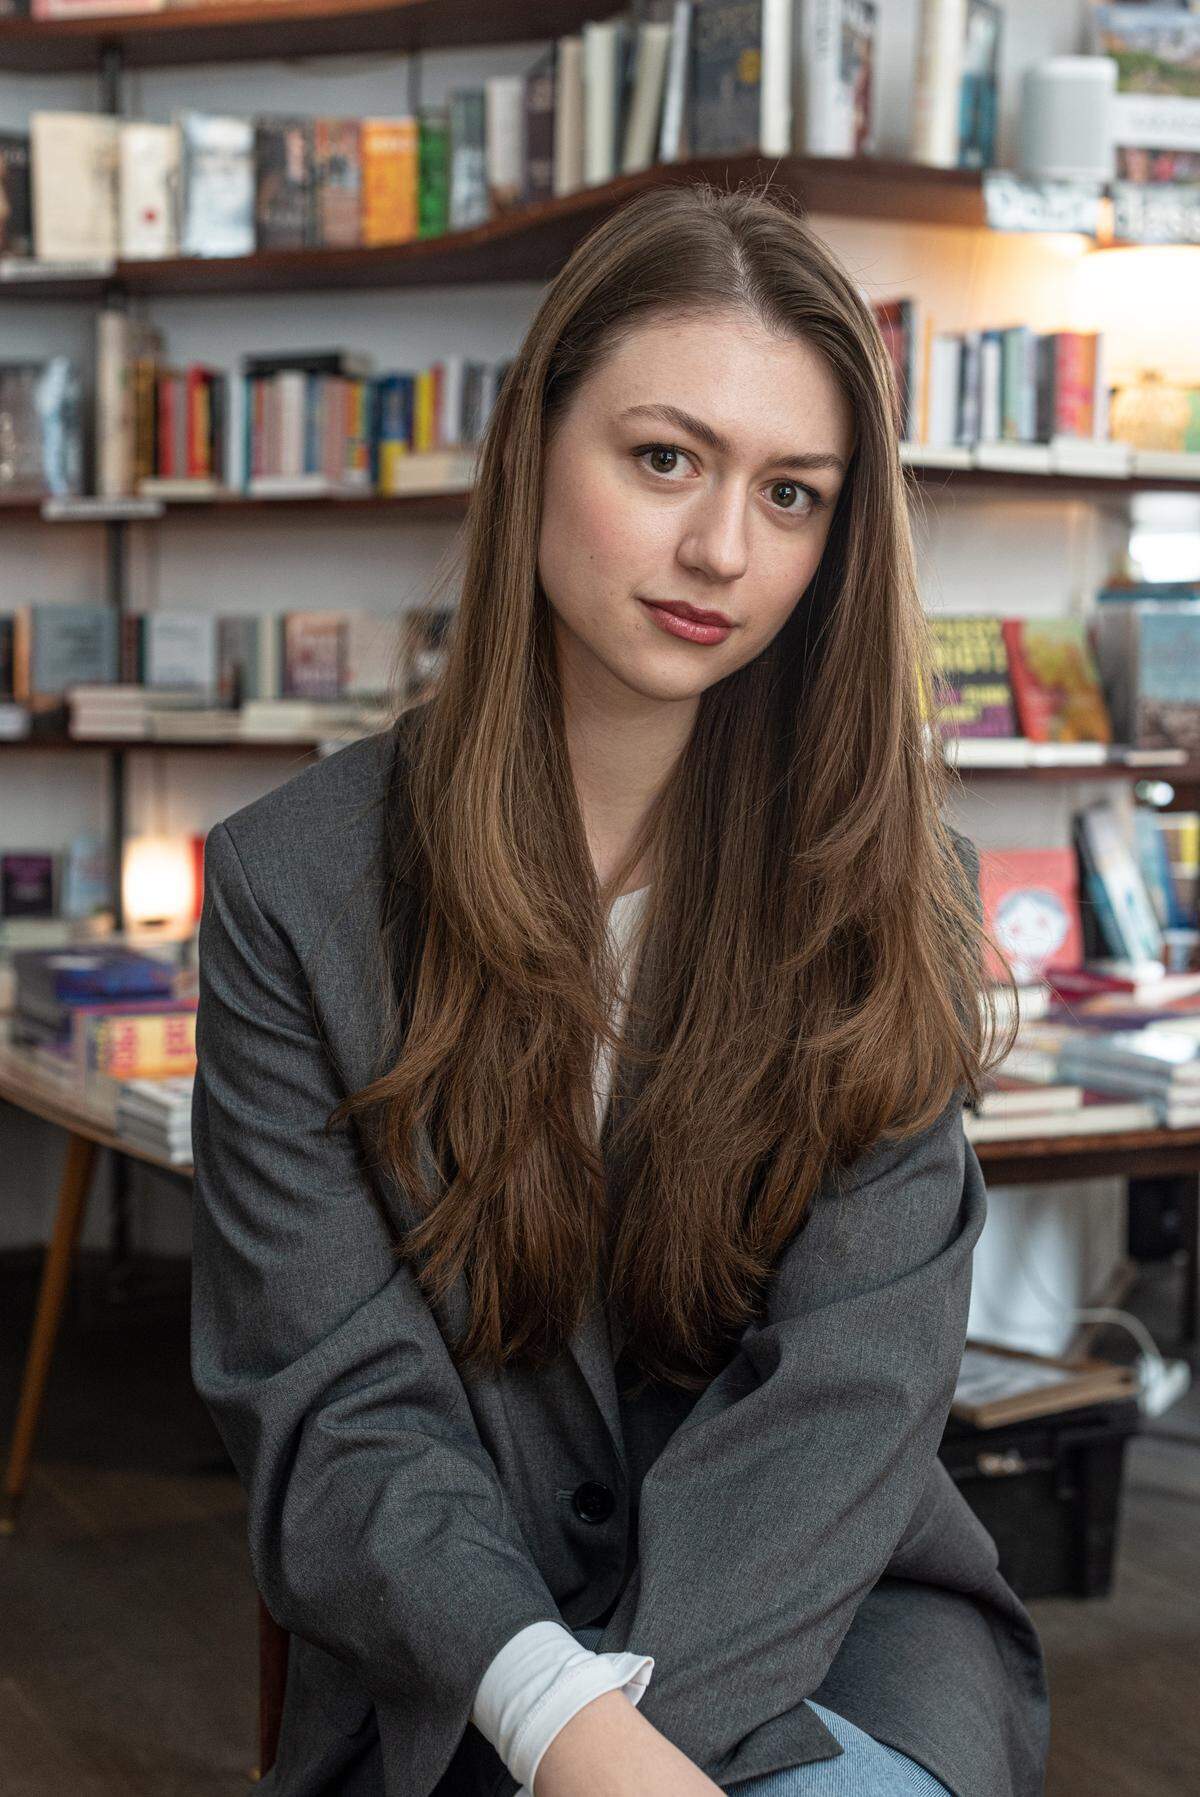 Die 23-jährige Kristina Stojanović, hier fotografiert im Café Phil in Mariahilf, studiert Jus in Wien und kommt ursprünglich aus Serbien. Das Lesen war bei ihr schon lang vor Tiktok da, vielleicht stellt sie gerade deswegen in ihren Kurzvideos auch Klassiker, serbische Belletristik oder zeitgenössische Literatur vor: Bücher, die beim Algorithmus teilweise wenig Anklang finden, während sie ein beliebteres Genre wie „New Adult“ kaum liest. Das Verlangen, über Bücher zu sprechen, hat sie – im Kontrast zu ästhetischen Lektürefotos auf Instagram – auf BookTok geholt. Dass so viele erst zum Lesen kommen, begeistert sie, und mittlerweile greift sie selbst hin und wieder zu einem BookTok-Buch.